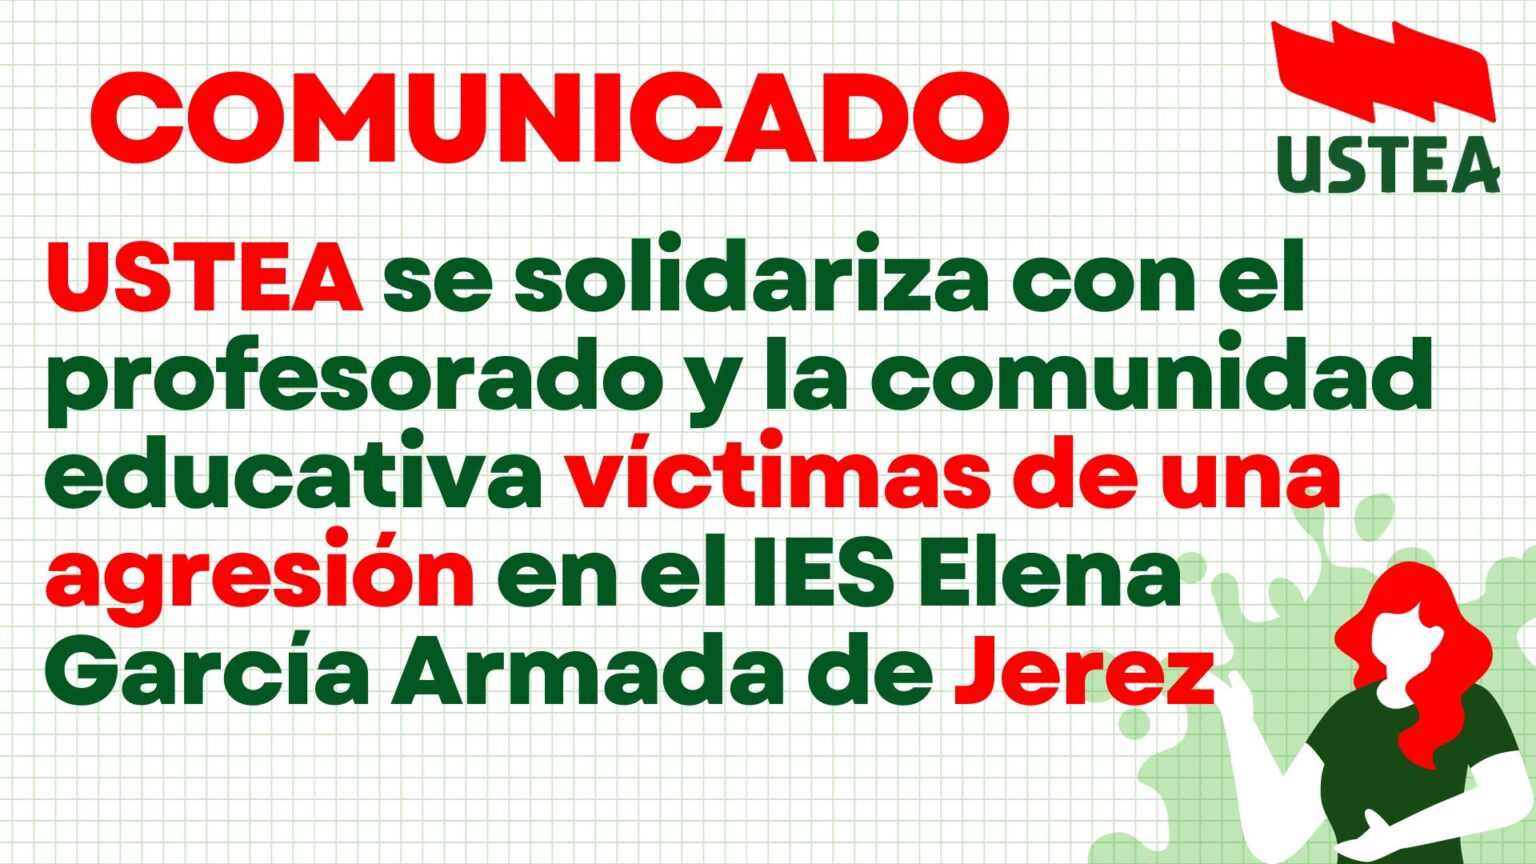 USTEA se solidariza con el profesorado y la comunidad educativa víctimas de una agresión en el IES Elena García Armada de Jerez